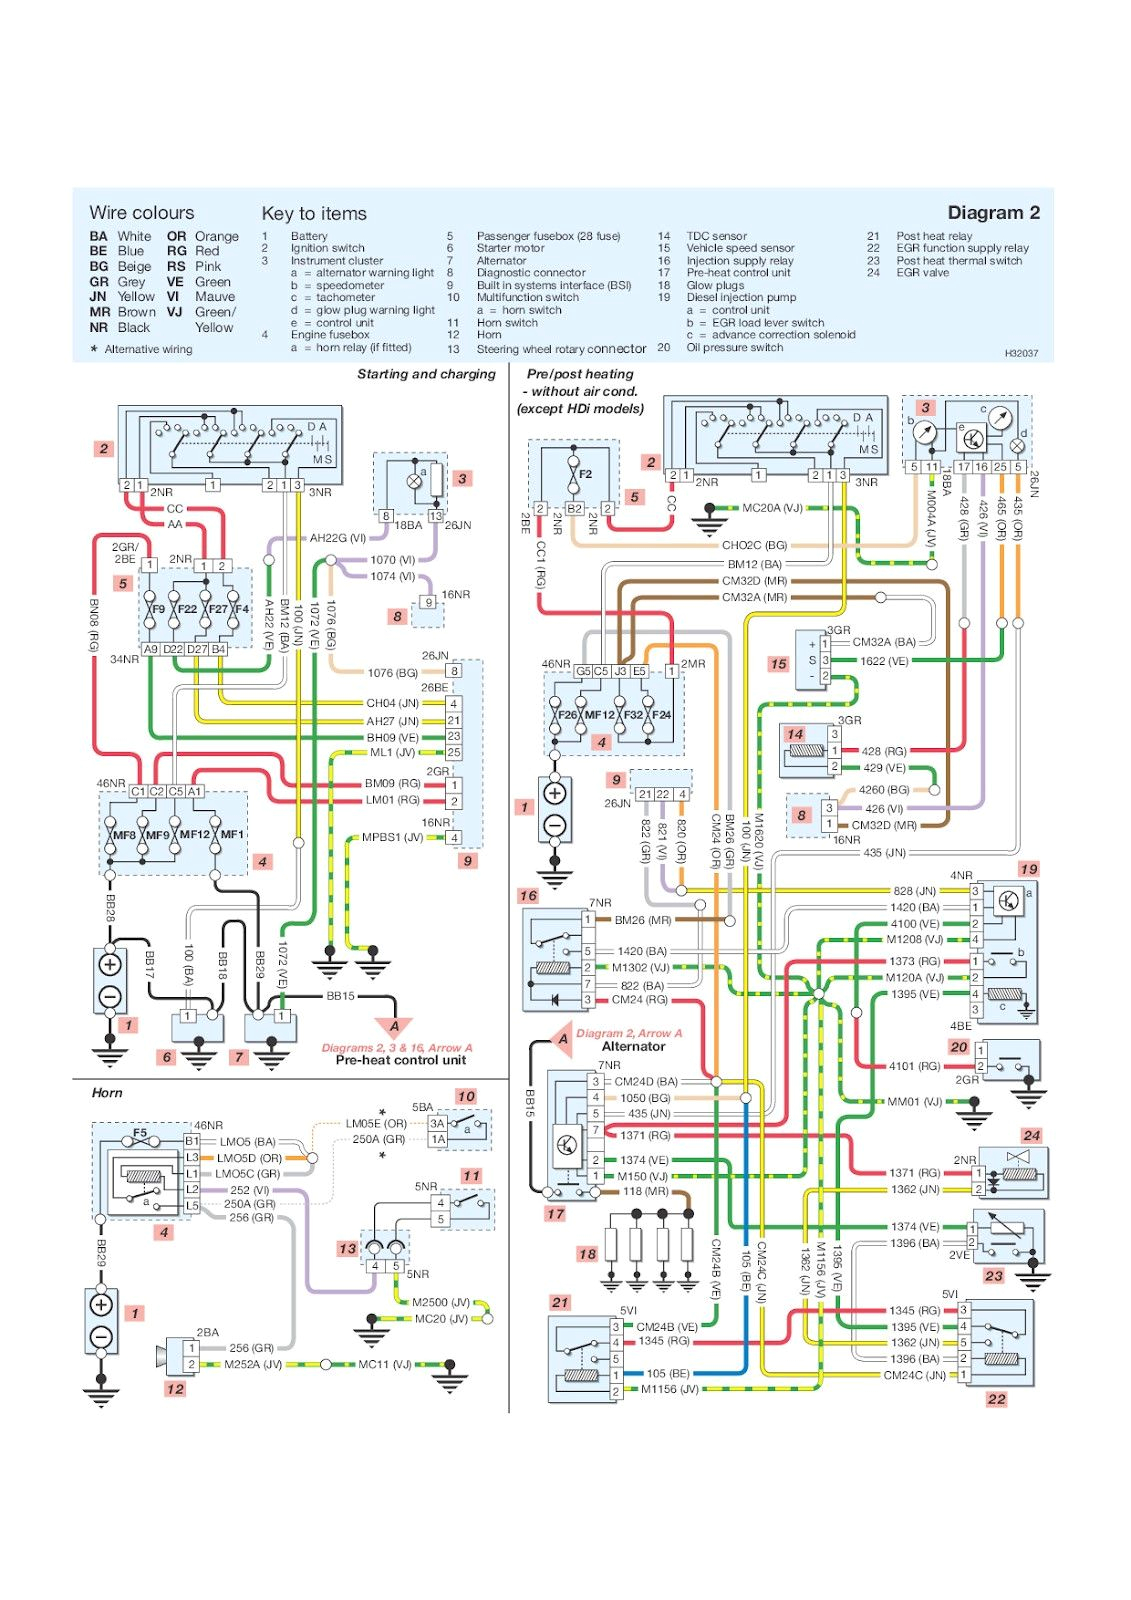 citroen engine schematics wiring diagram blog citroen engine schematics wiring diagram database citroen engine diagrams wiring